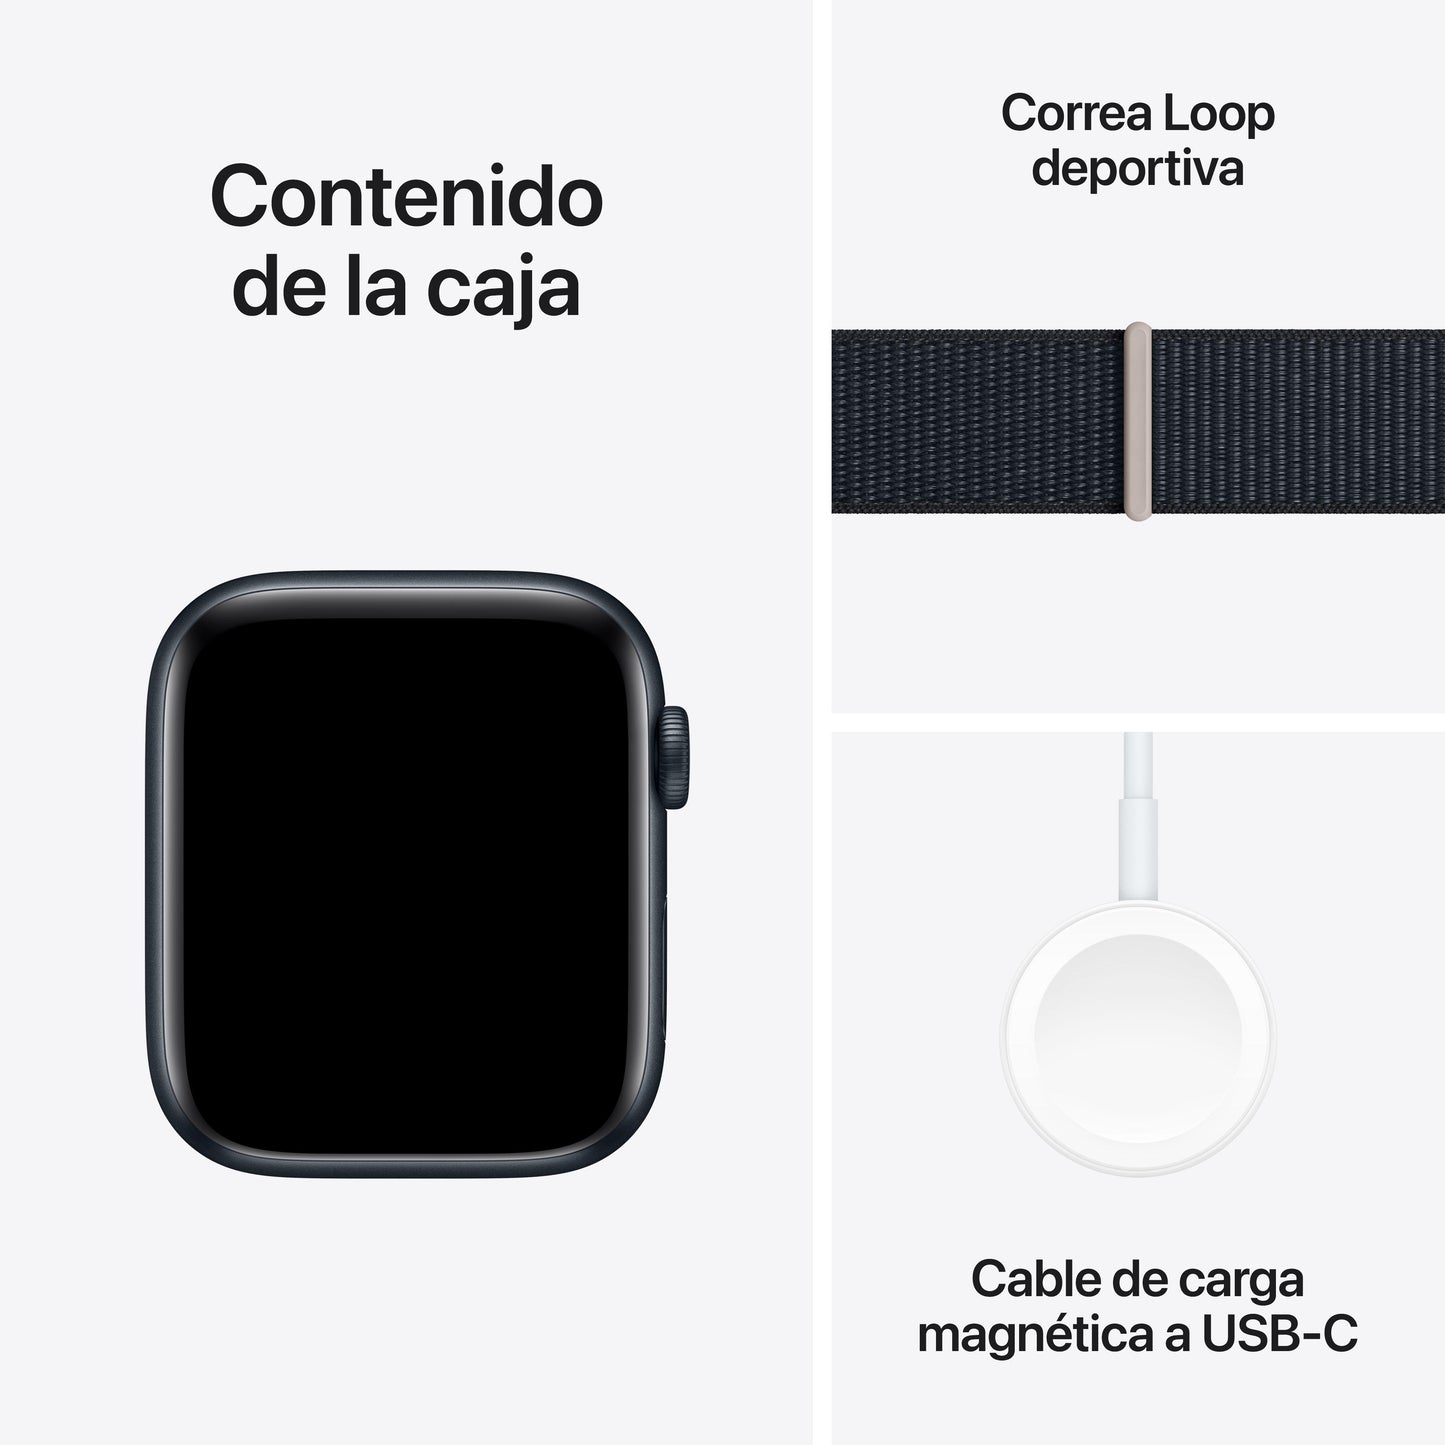 Apple Watch SE (GPS + Cellular) - Caja de aluminio en color medianoche de 44 mm - Correa Loop deportiva color medianoche